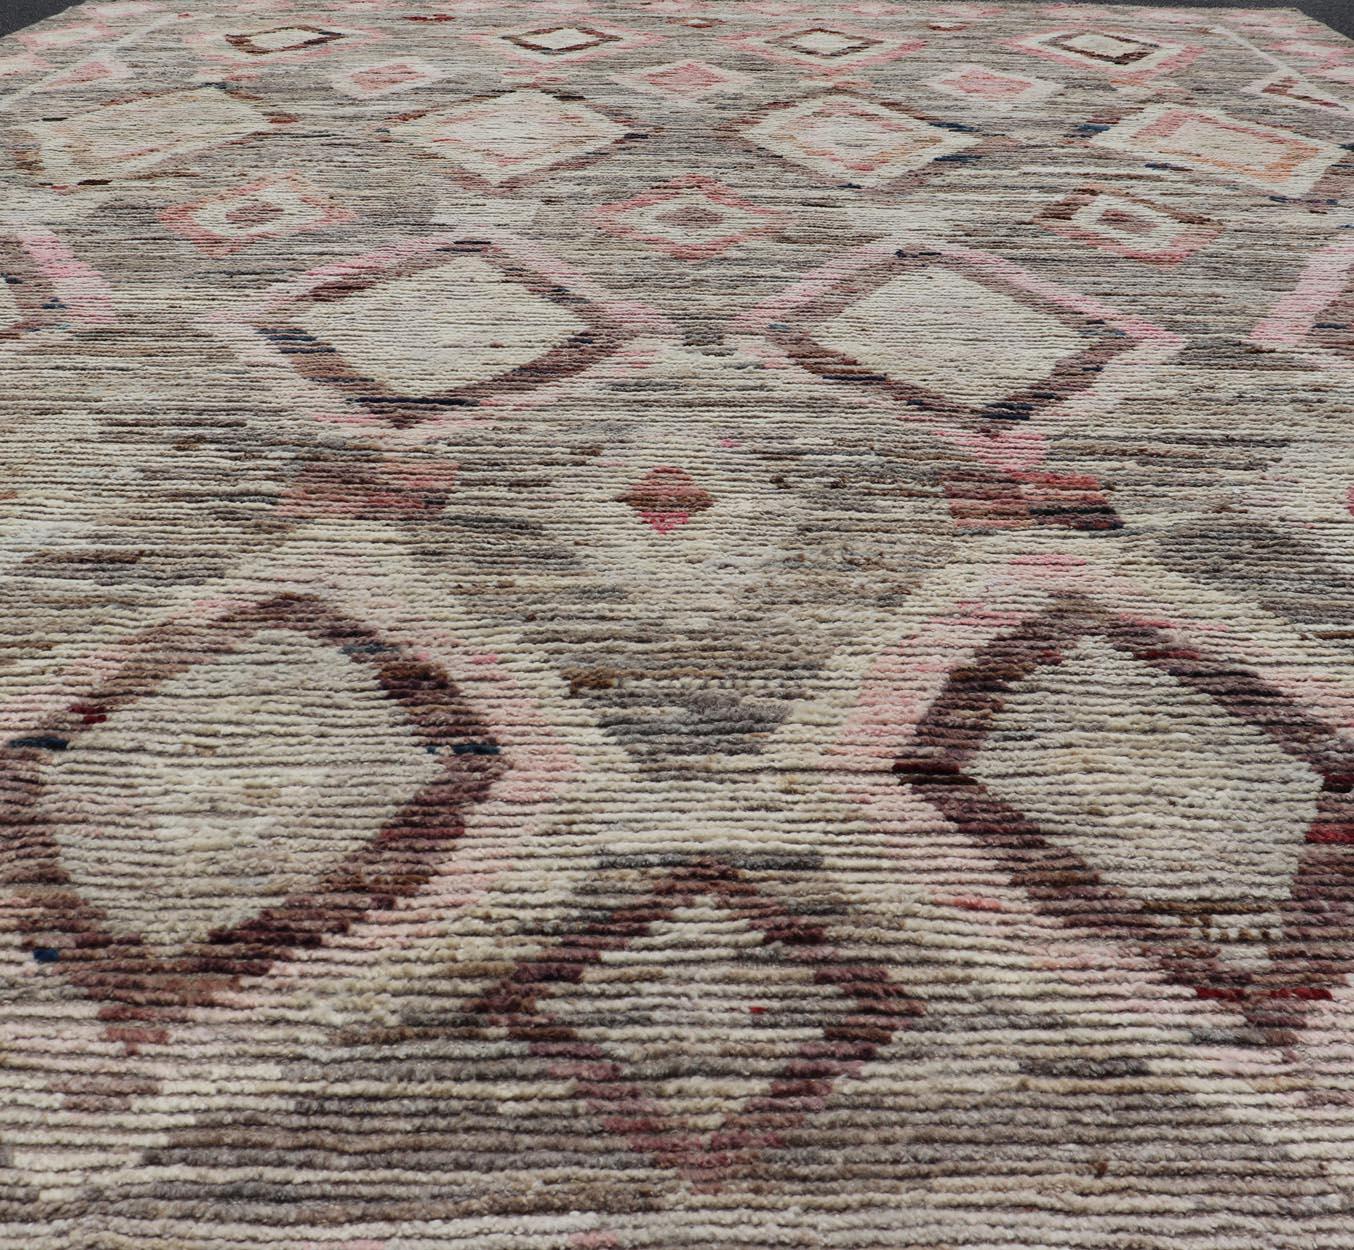 Moderner handgeknüpfter Teppich im marokkanischen Stil im Stammesdesign in Braun, Rosa und Grau (Handgeknüpft) im Angebot